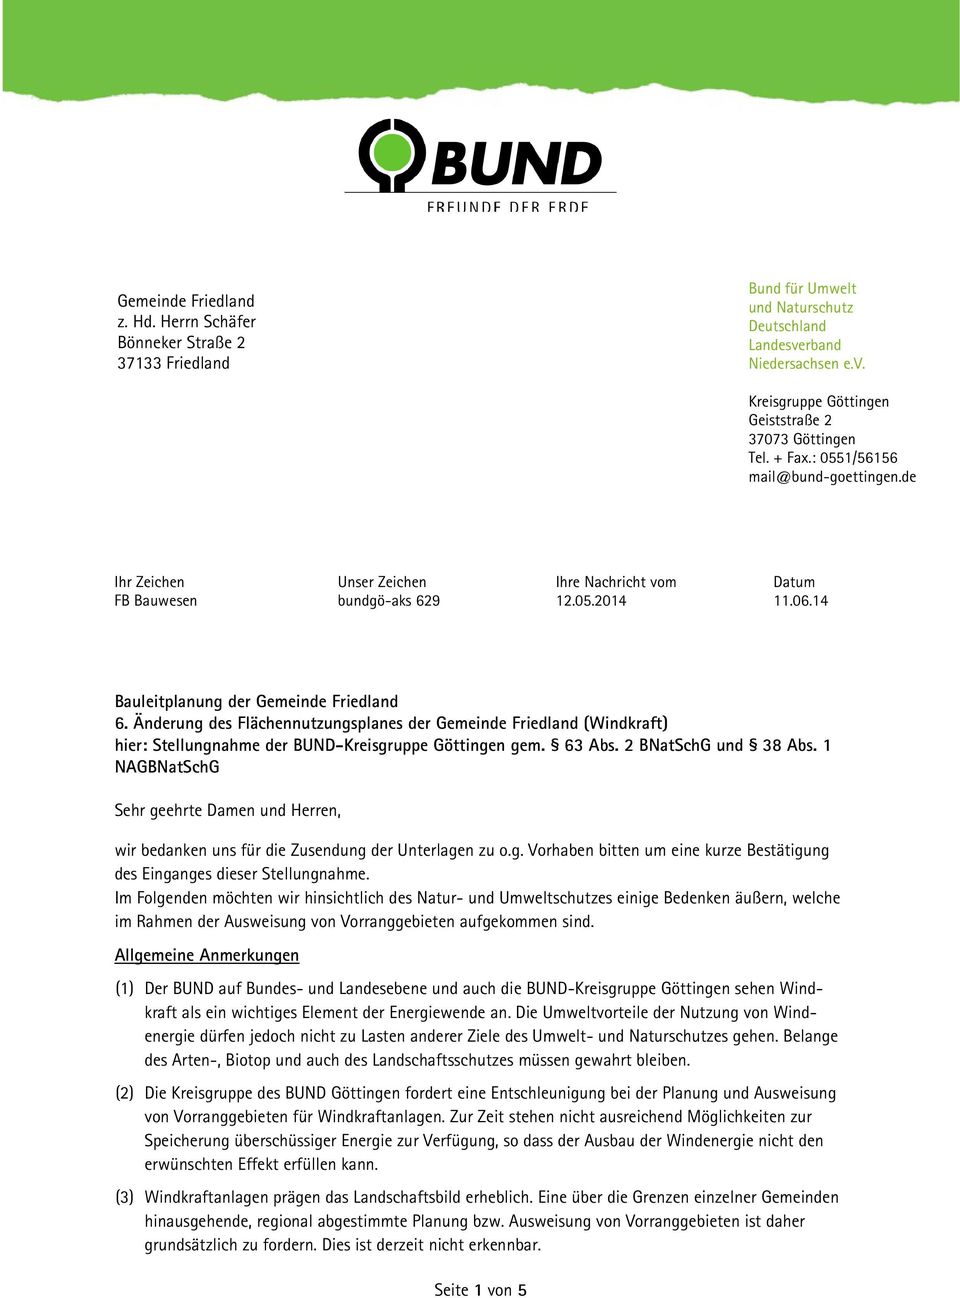 Änderung des Flächennutzungsplanes der Gemeinde Friedland (Windkraft) hier: Stellungnahme der BUND-Kreisgruppe Göttingen gem. 63 Abs. 2 BNatSchG und 38 Abs.